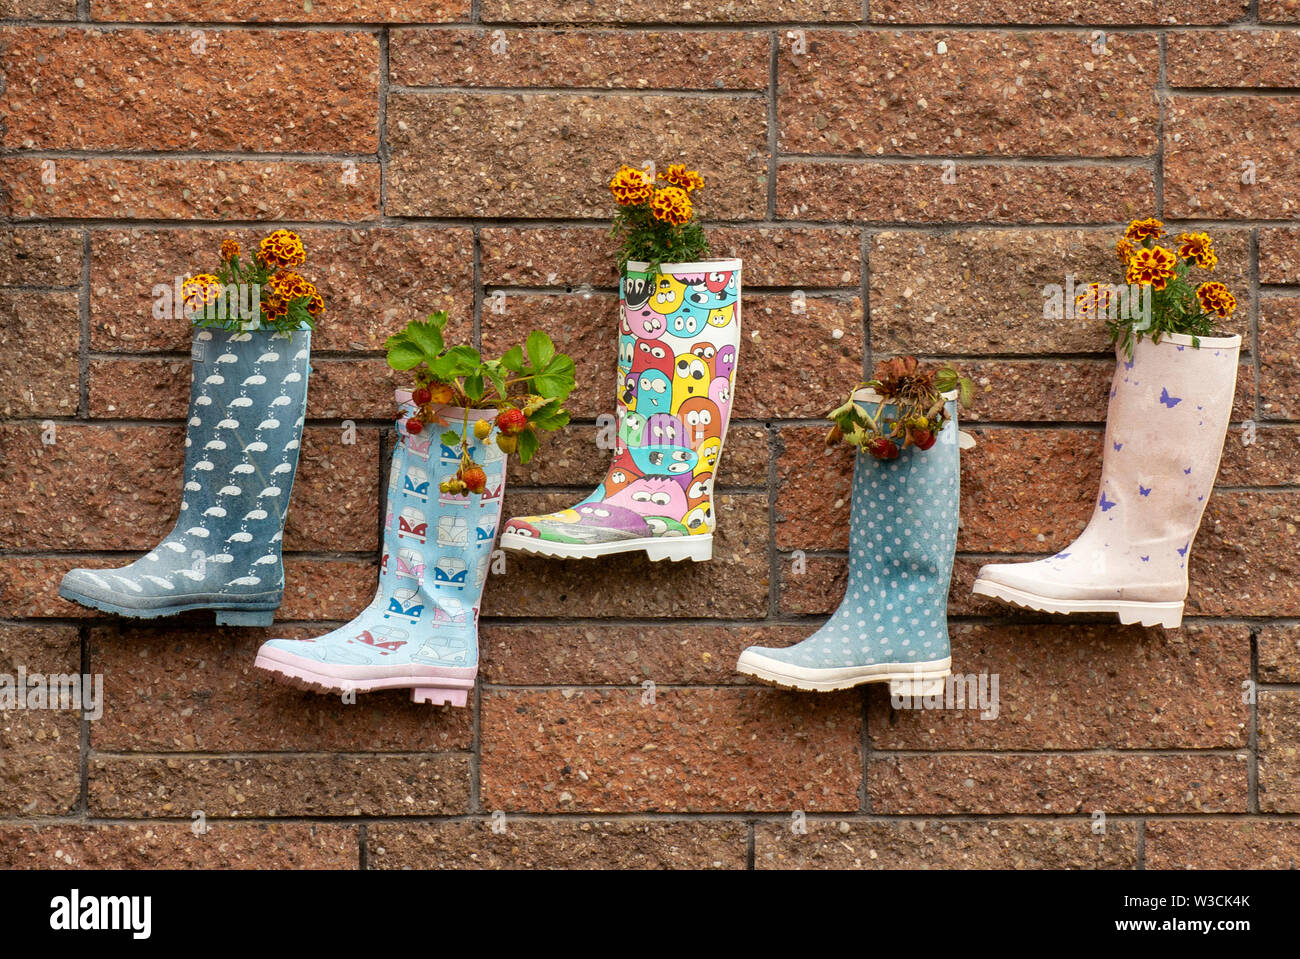 Ist lustig, Kinder Kid's Wellington welly boots Blumentöpfe mit Erdbeeren und Blumen gepflanzt, die Mauer in irischen Kindergarten. Stockfoto